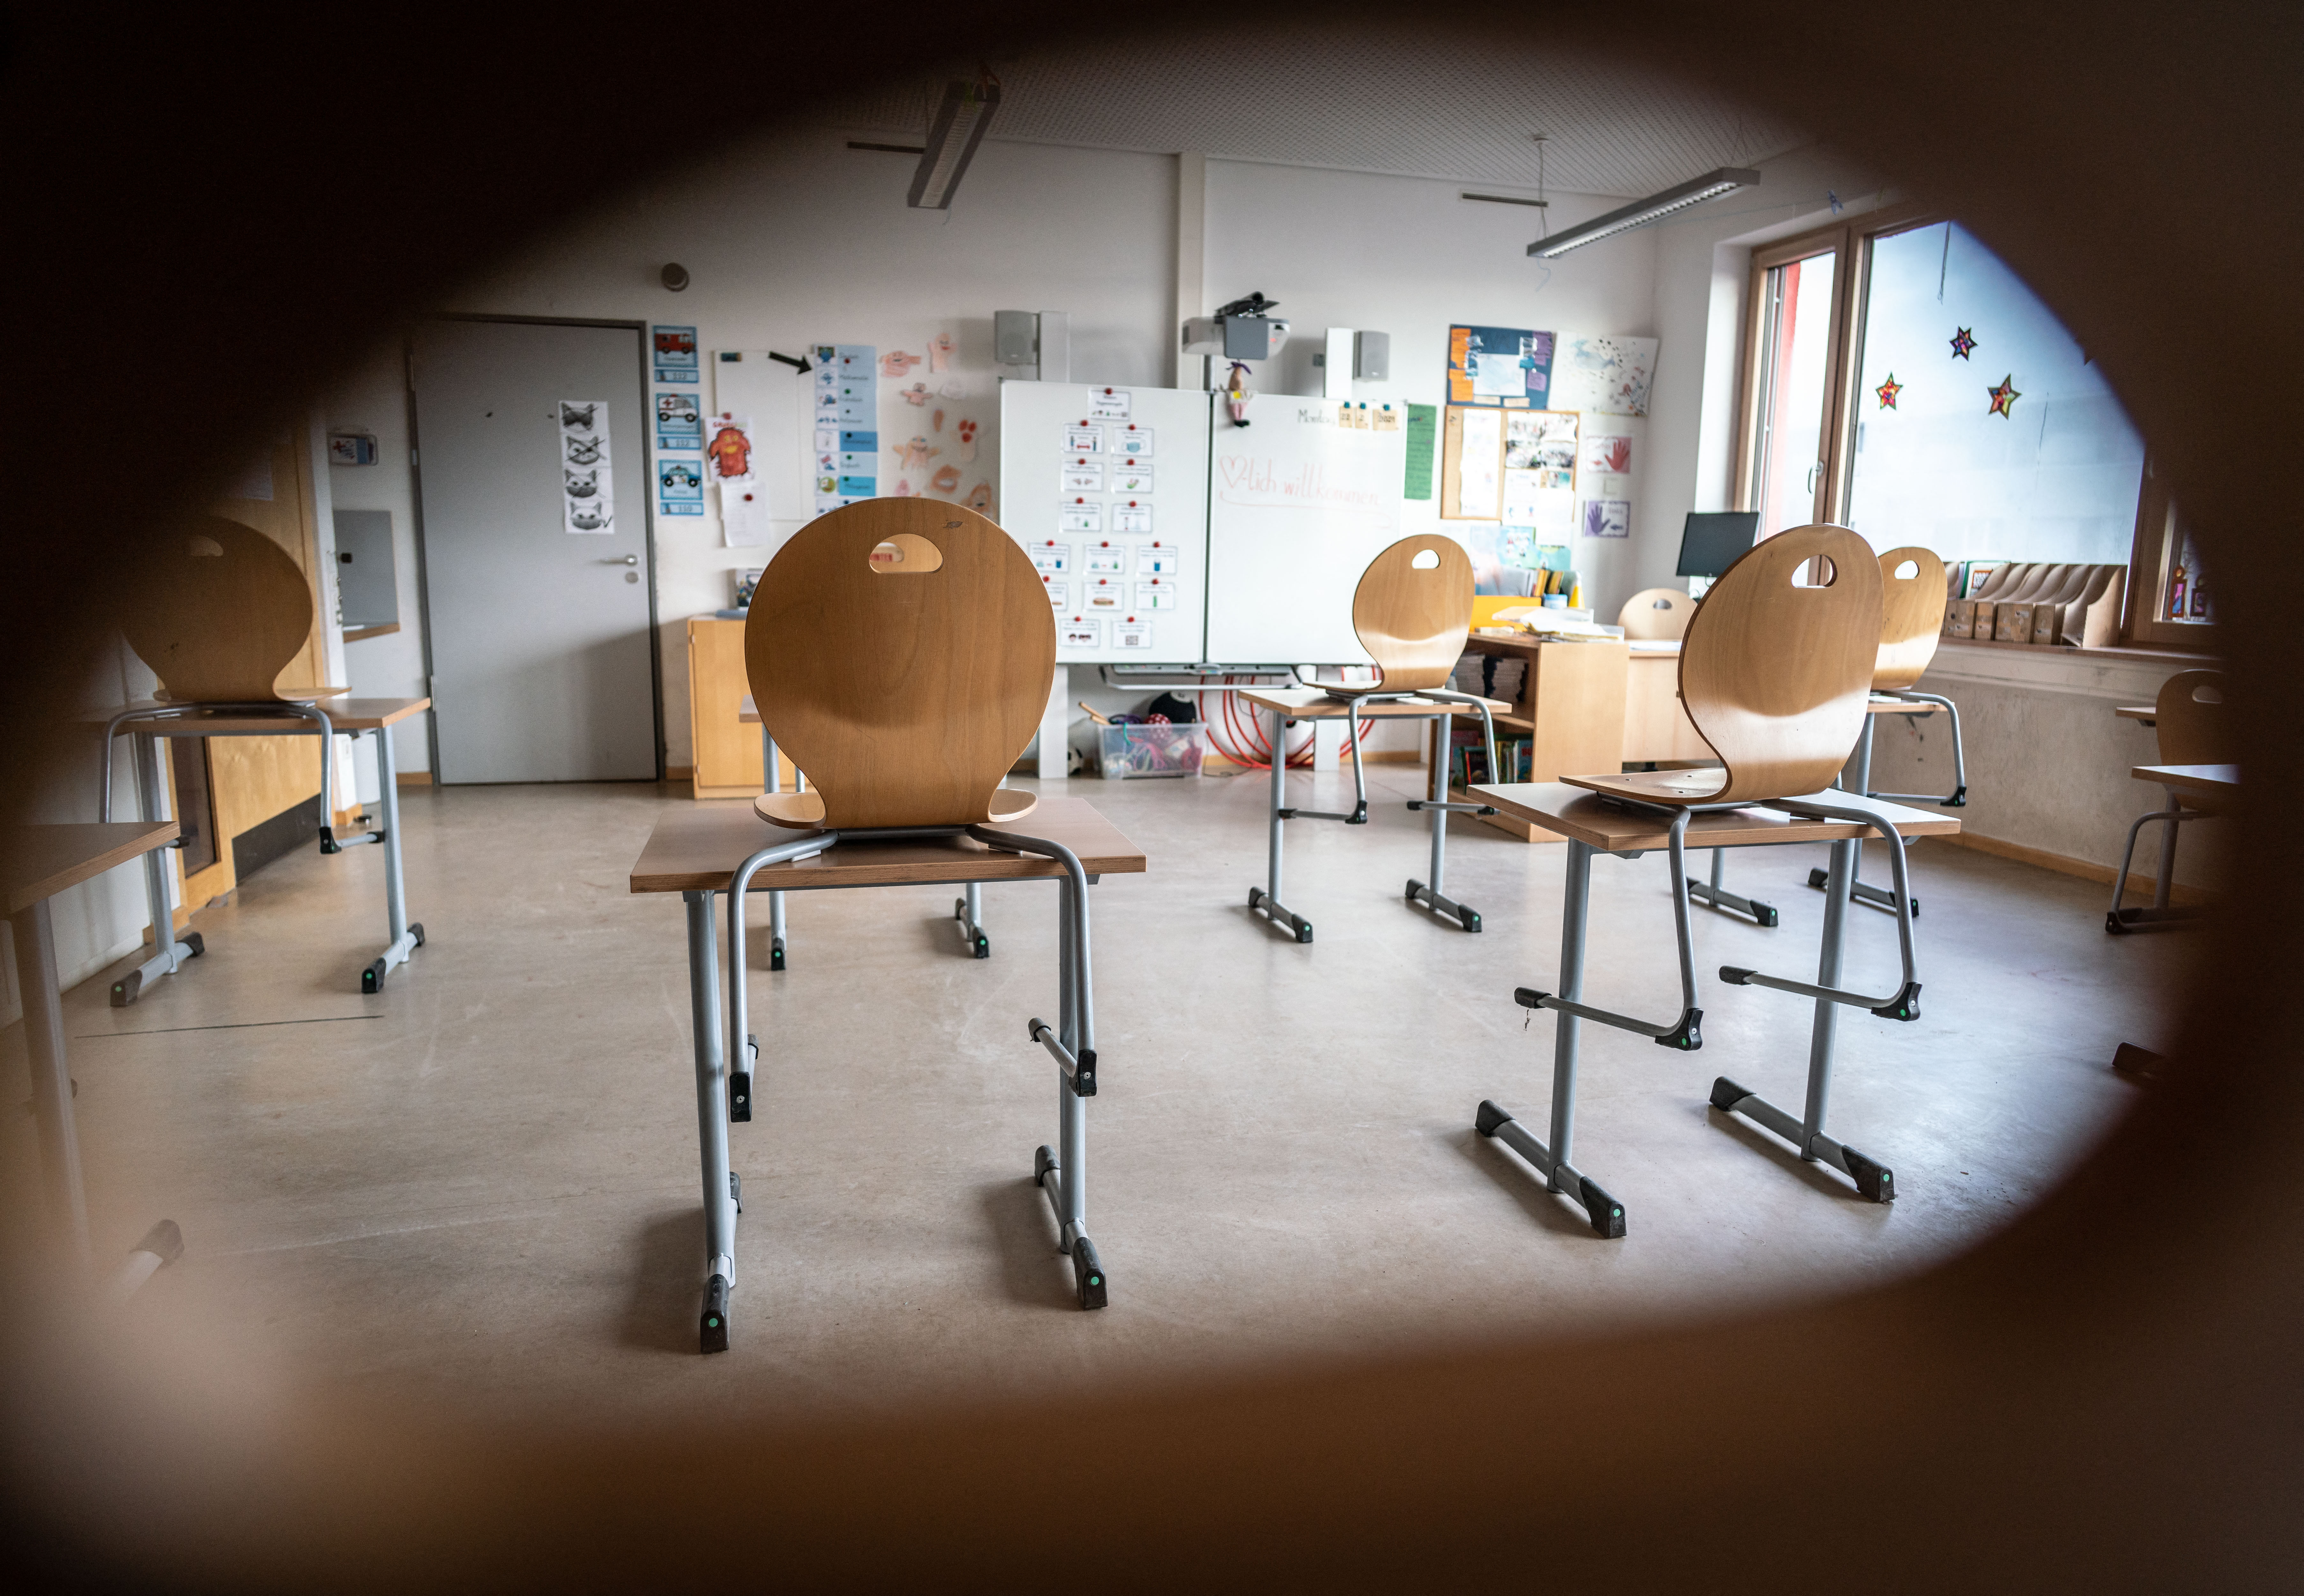 Felfüggesztett börtönt kapott egy volt tanár, akinek szexuális kapcsolata volt egy általános iskolással